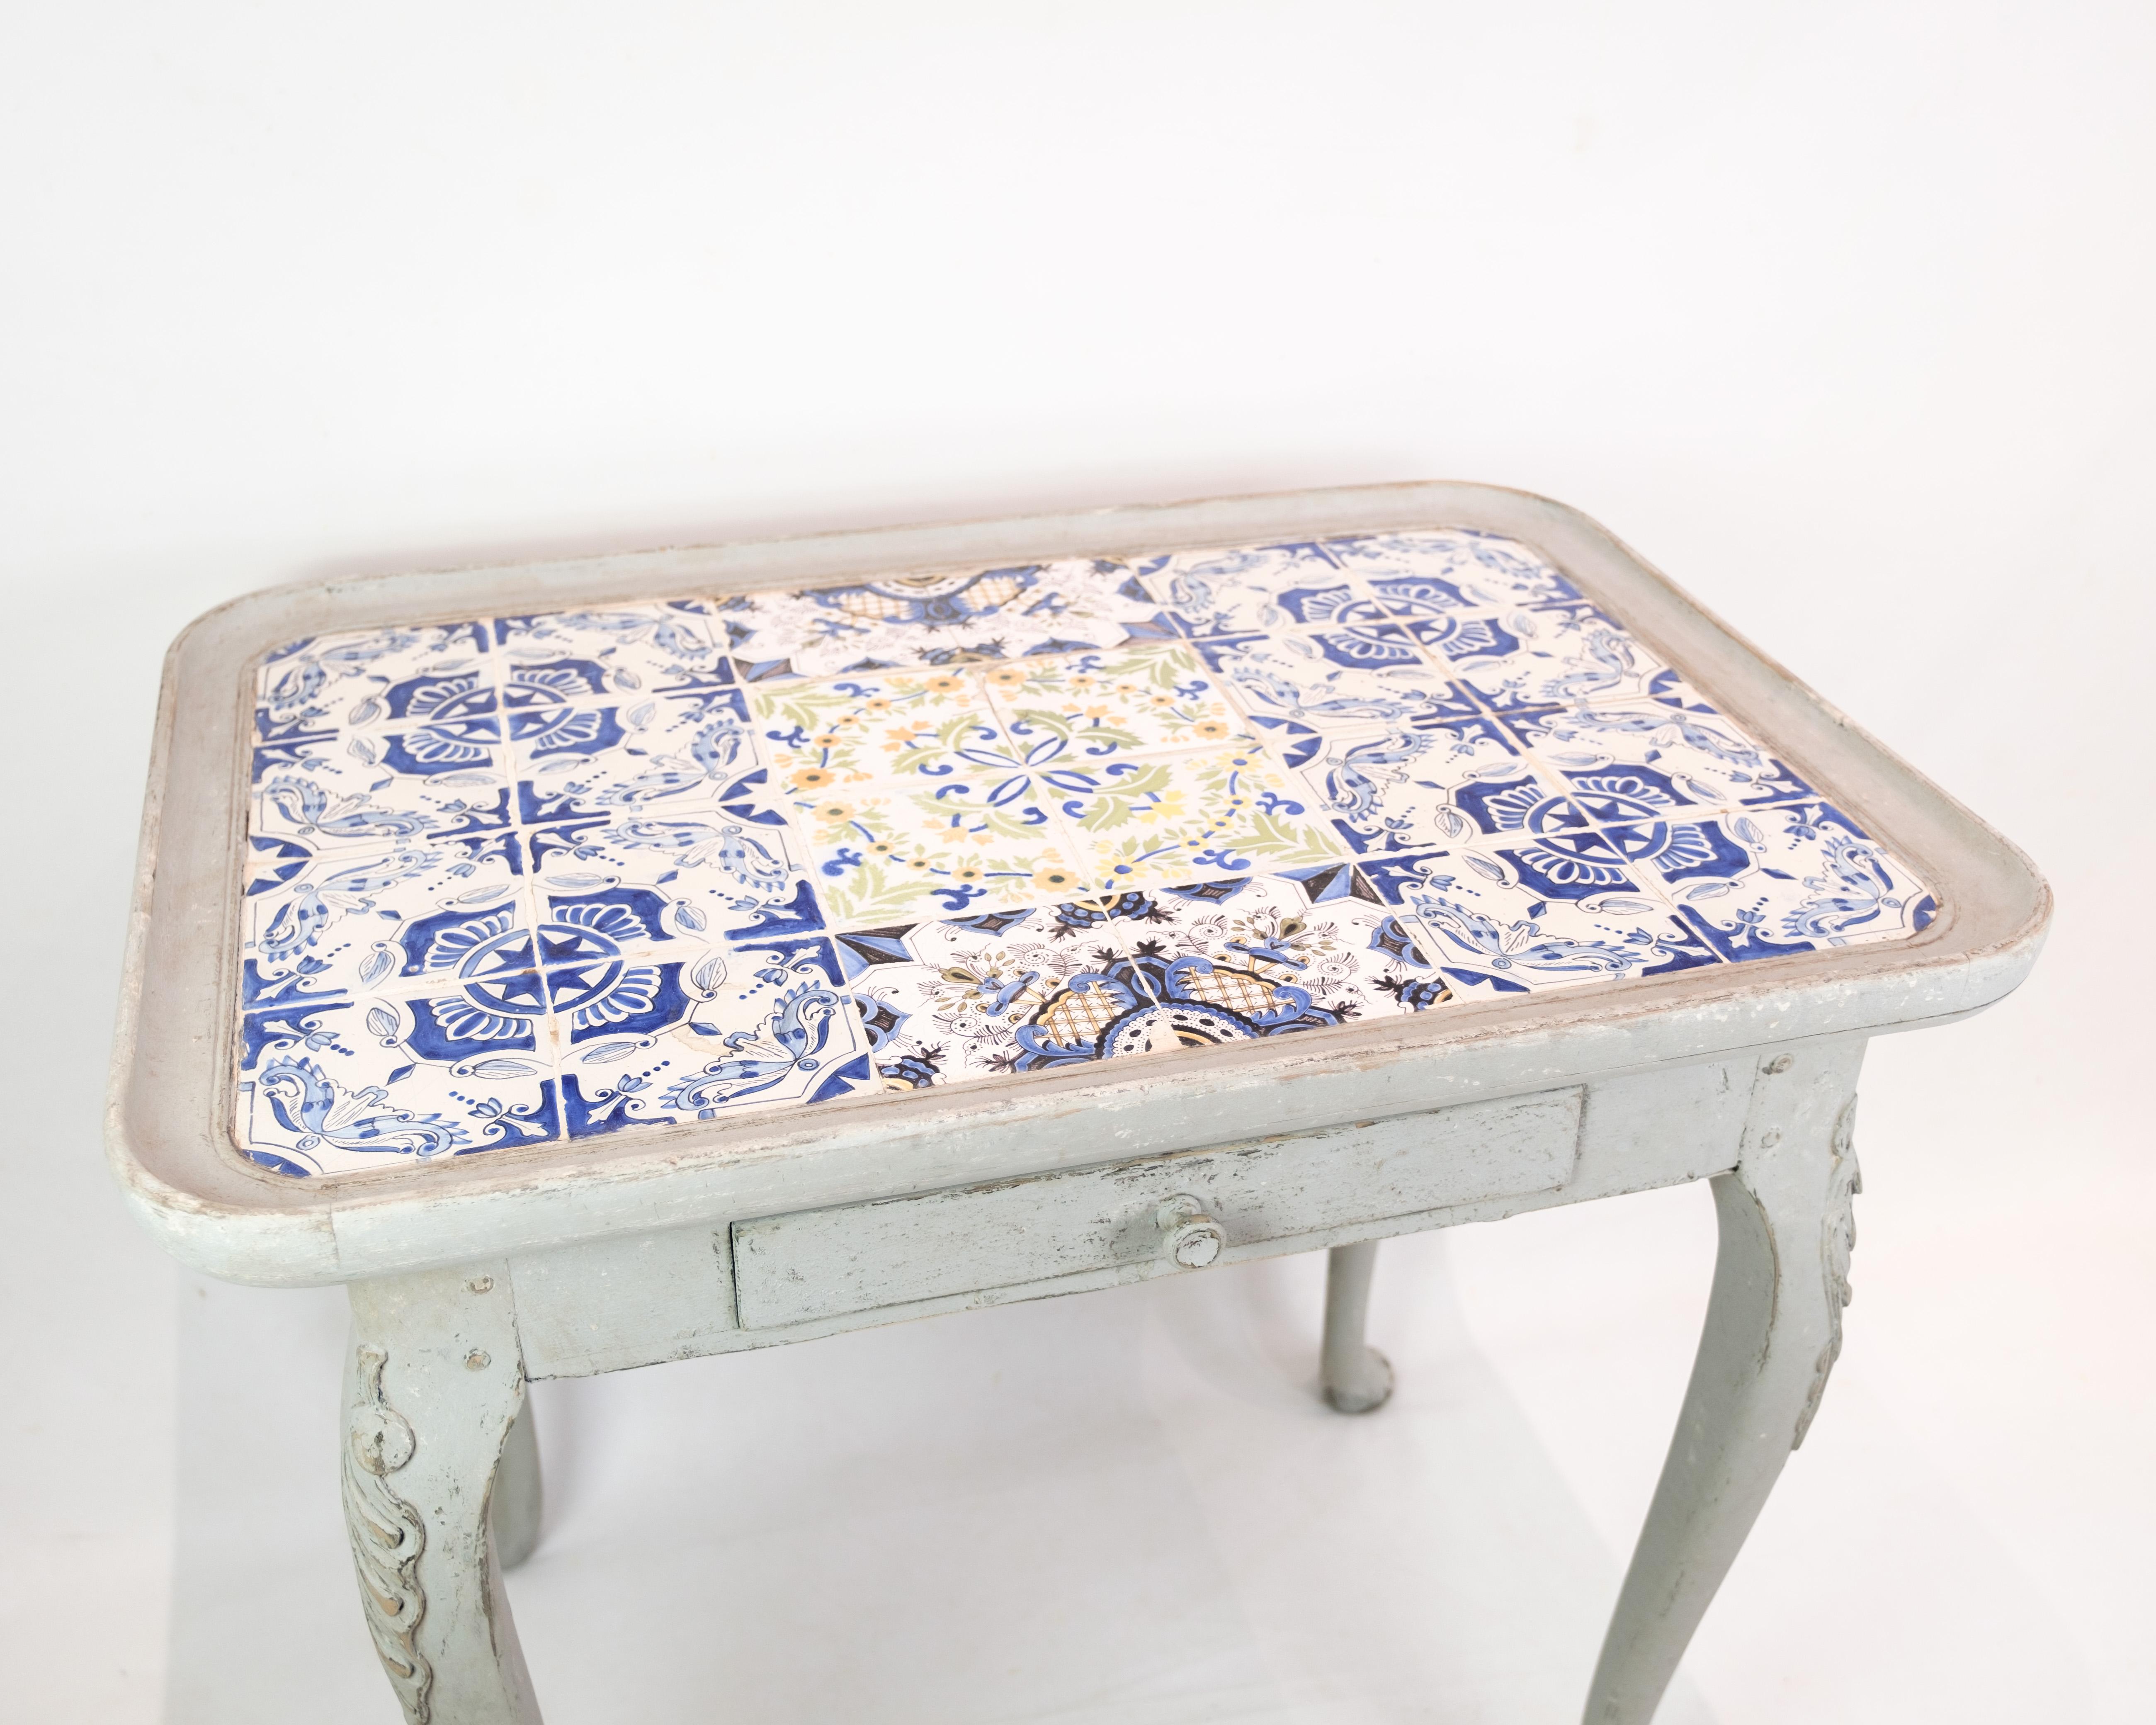 La table à carreaux rococo, peinte en gris et datée de 1780, est un charmant exemple de mobilier classique. Ses formes élégamment incurvées et ses détails raffinés sont caractéristiques de l'époque et ajoutent un charme historique à n'importe quelle